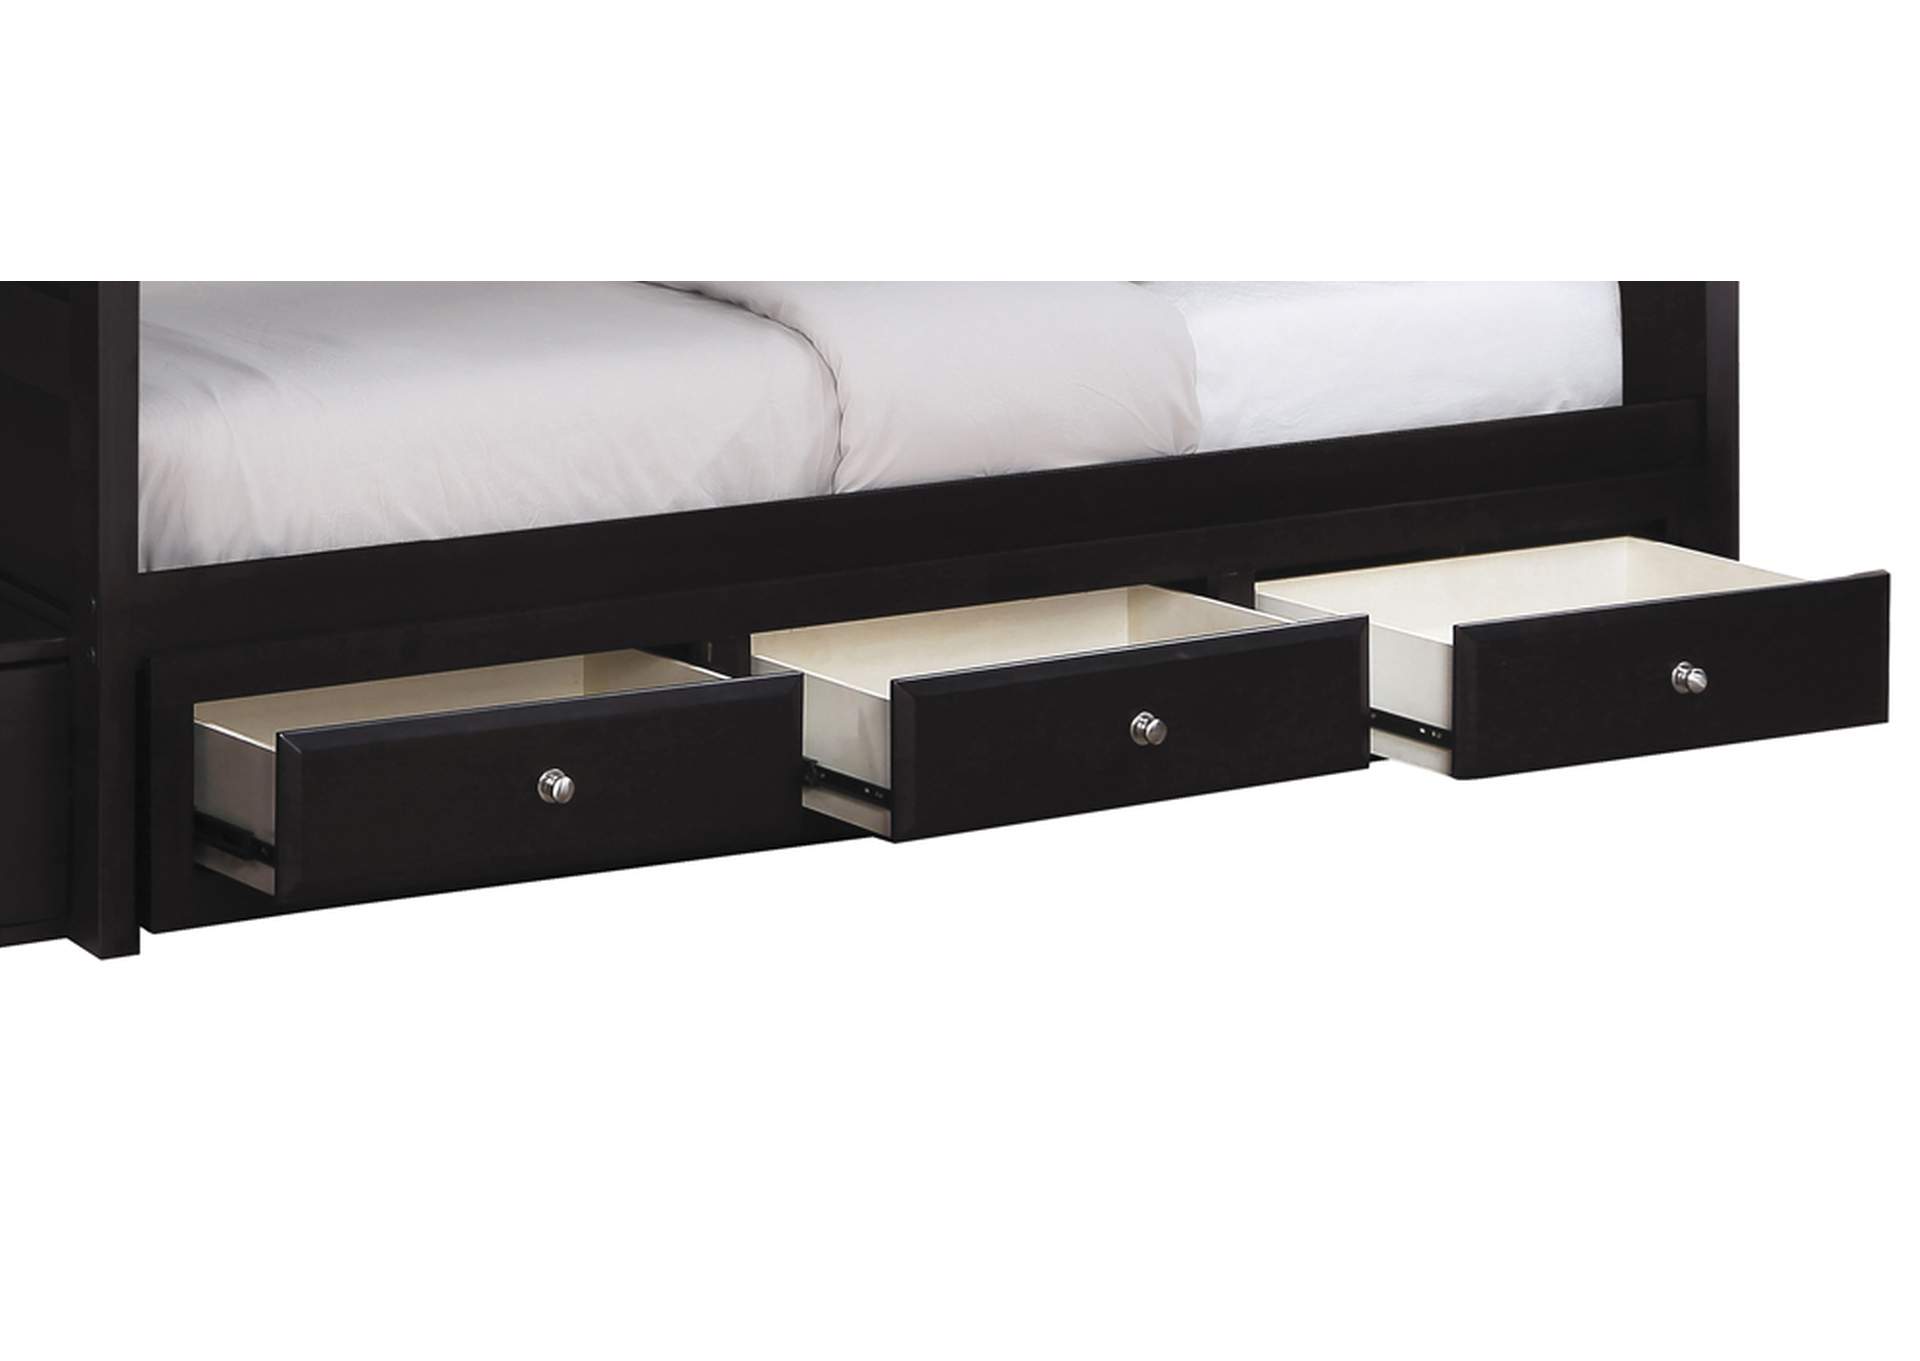 Elliott 3-drawer Under Bed Storage Cappuccino,Coaster Furniture